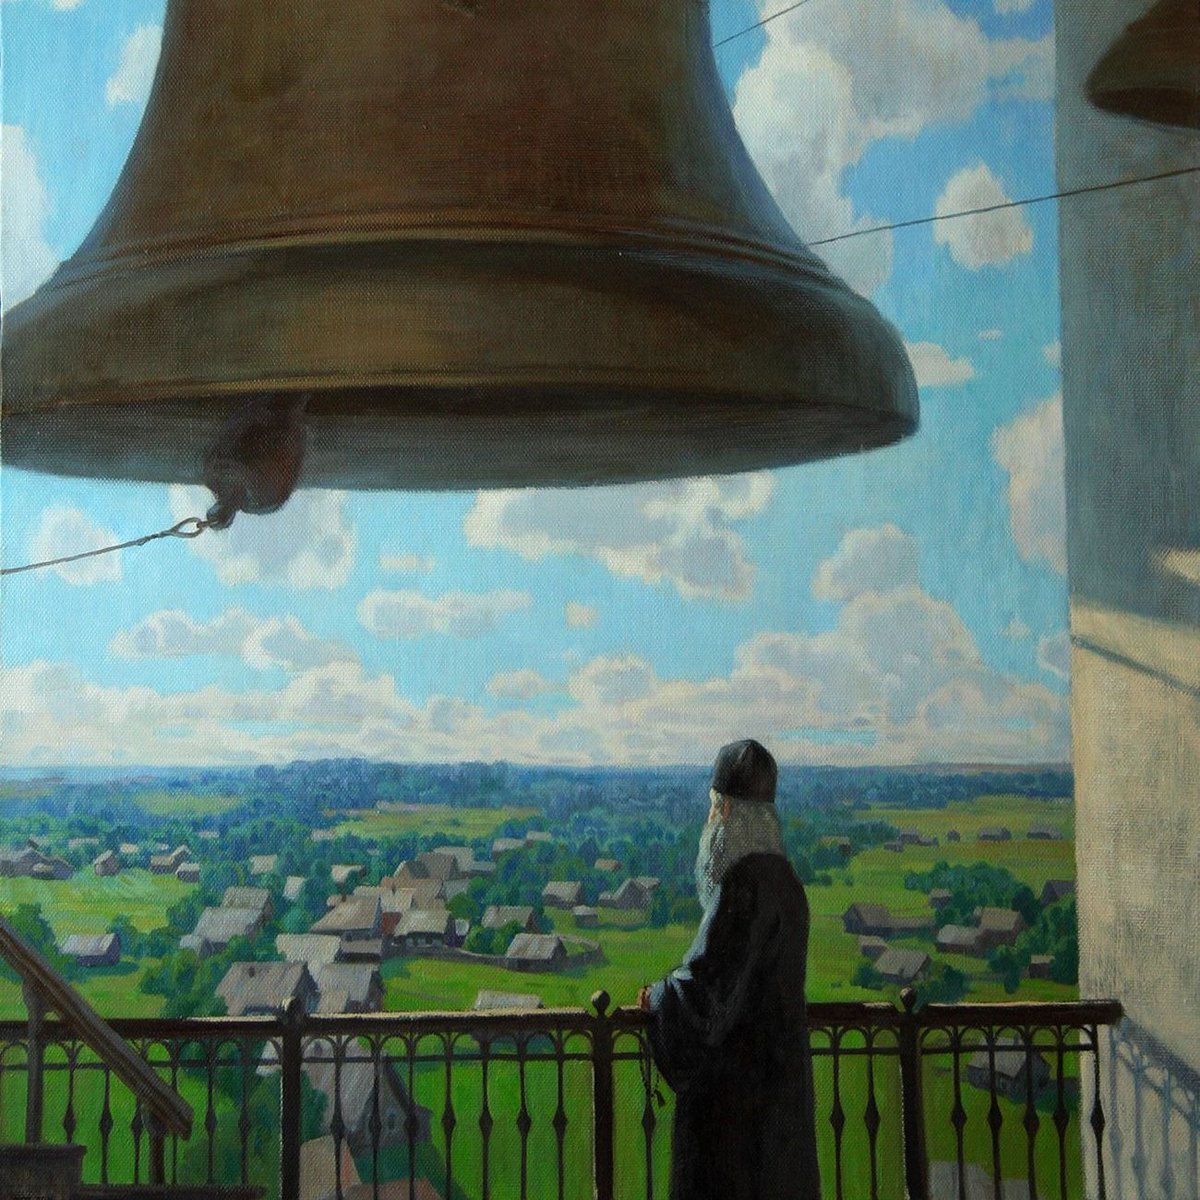 Утренние звоны. Картина колокола Якунчикова. Колокольный звон колокол Благовест.